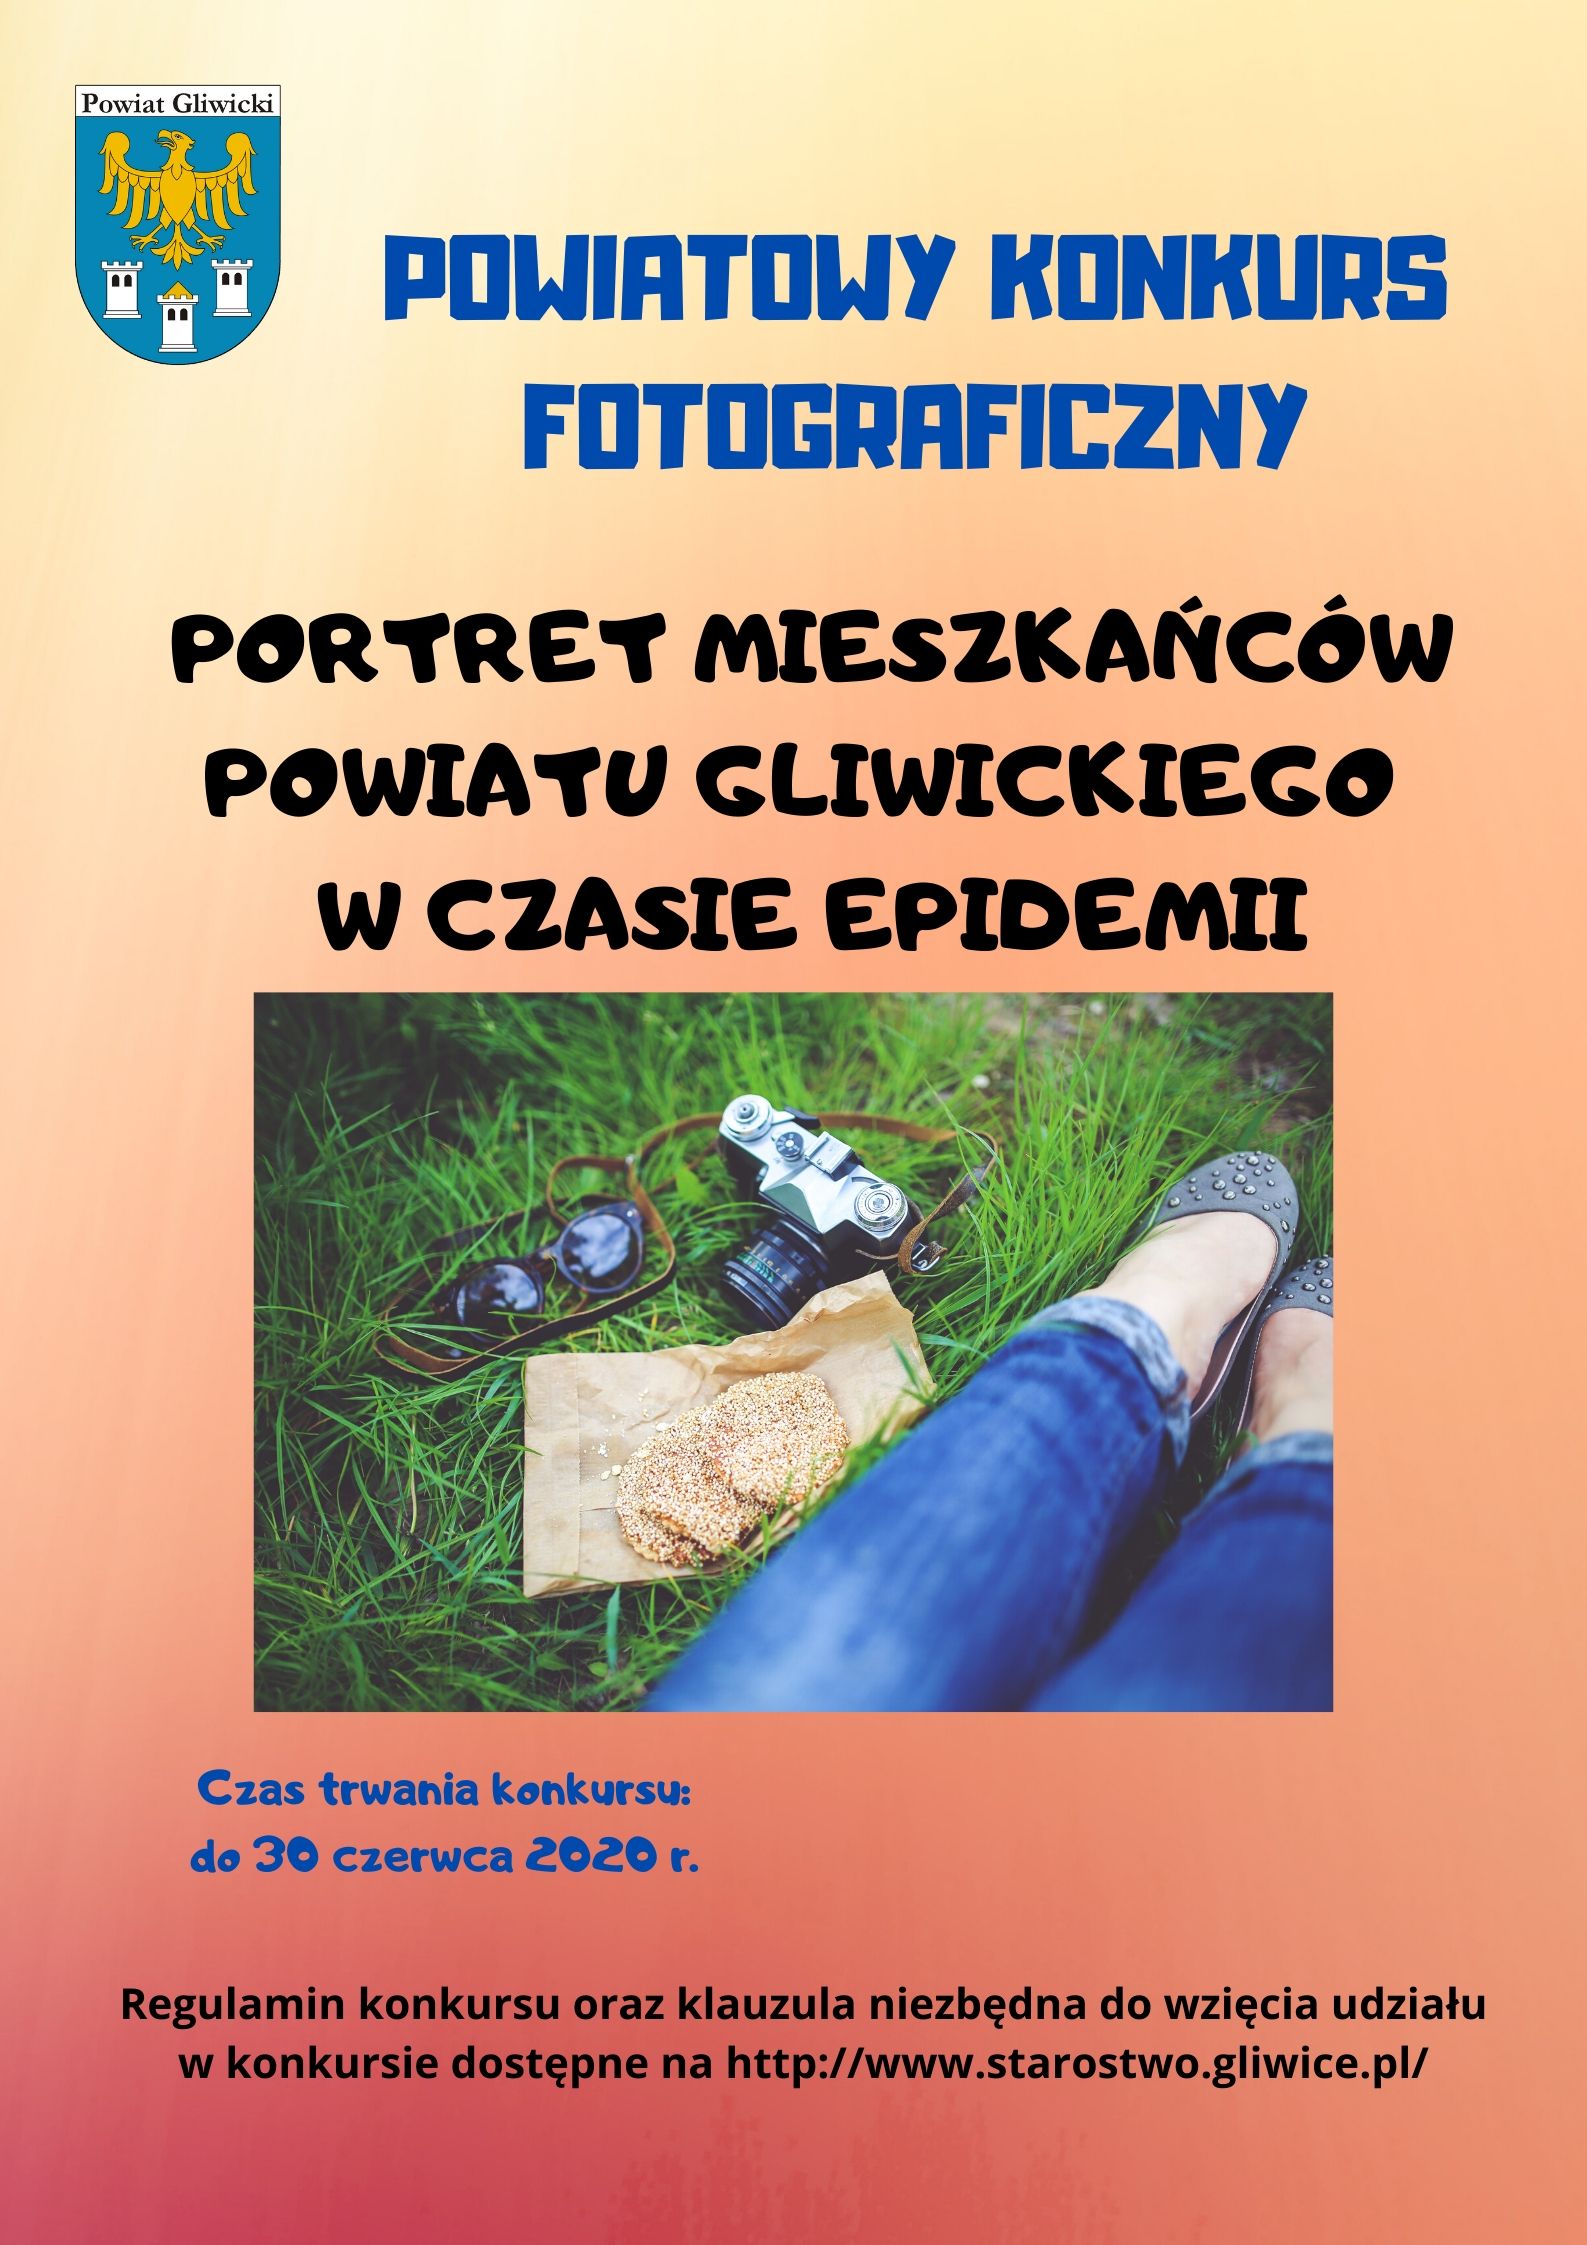 Portret Mieszkańców Powiatu gliwickiego w czasie epidemii. Konkurs trwa do 30 czerwca 2020r.